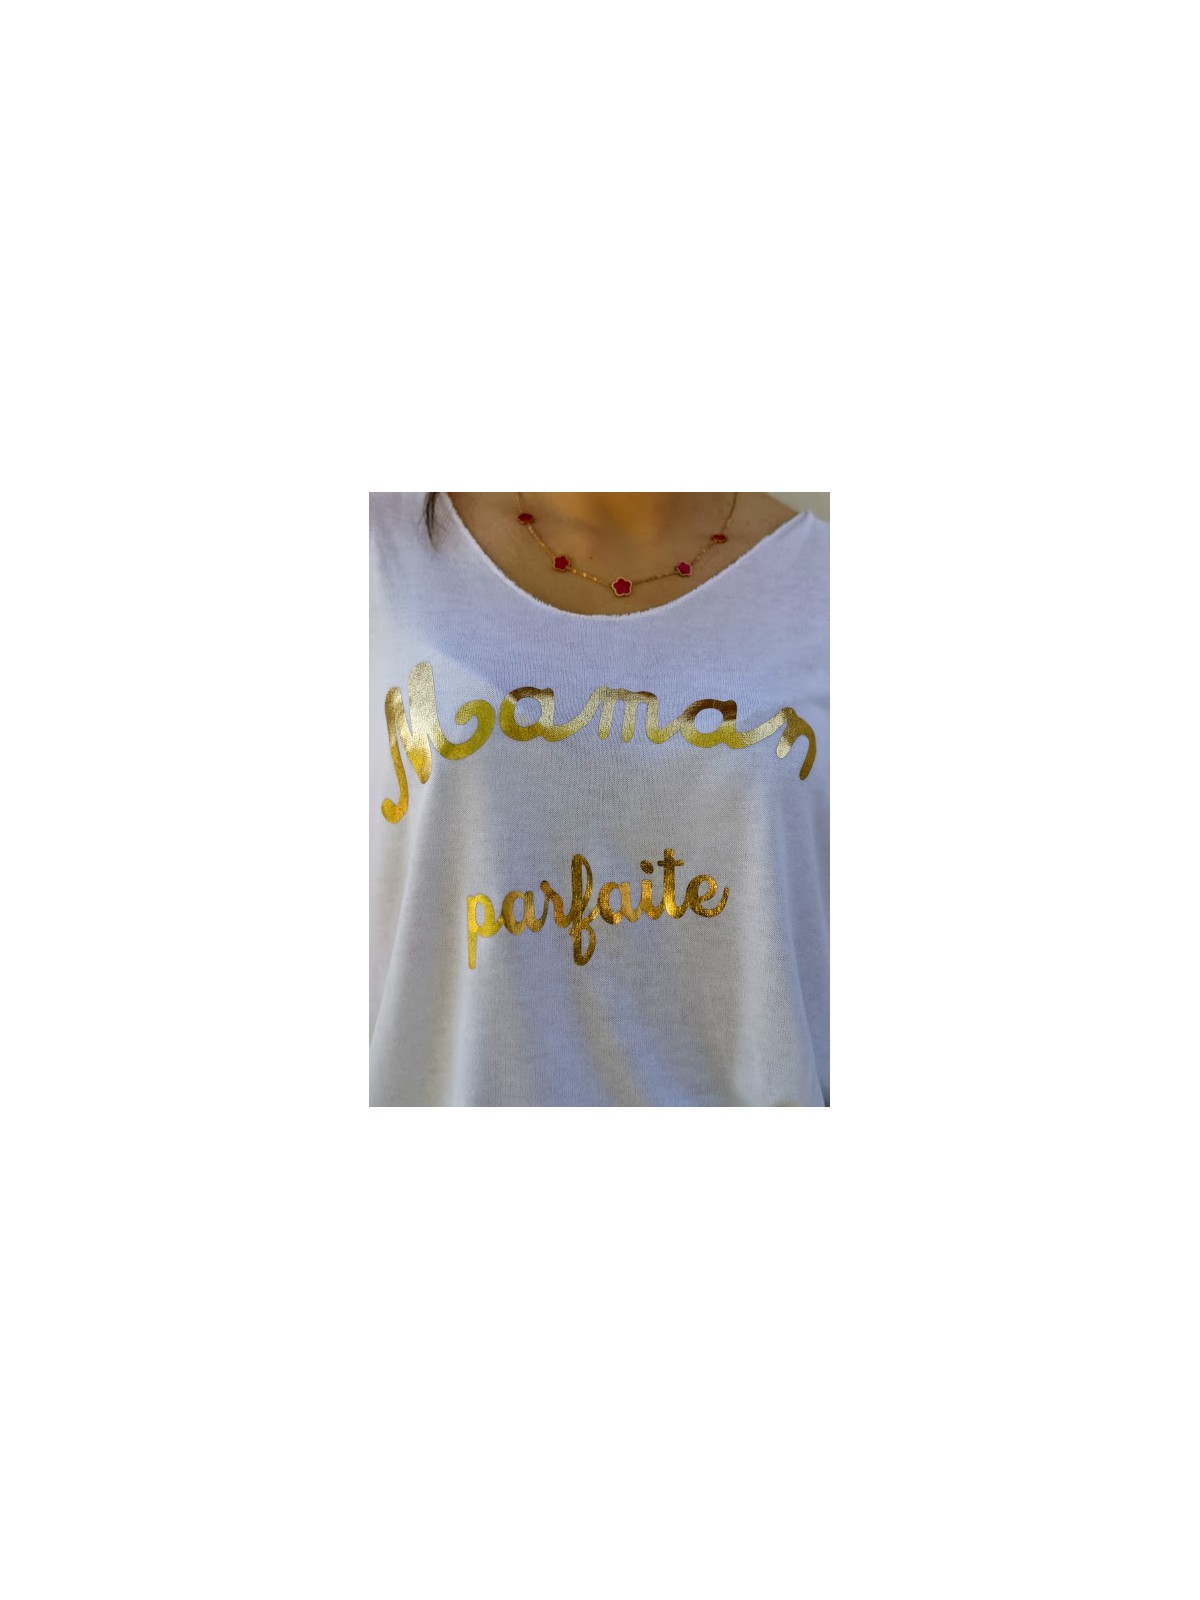 T.shirt blanc Maman parfaite oversize l 2 vue des détails de l'inscription l Tilleulmenthe boutique de mode femme en ligne